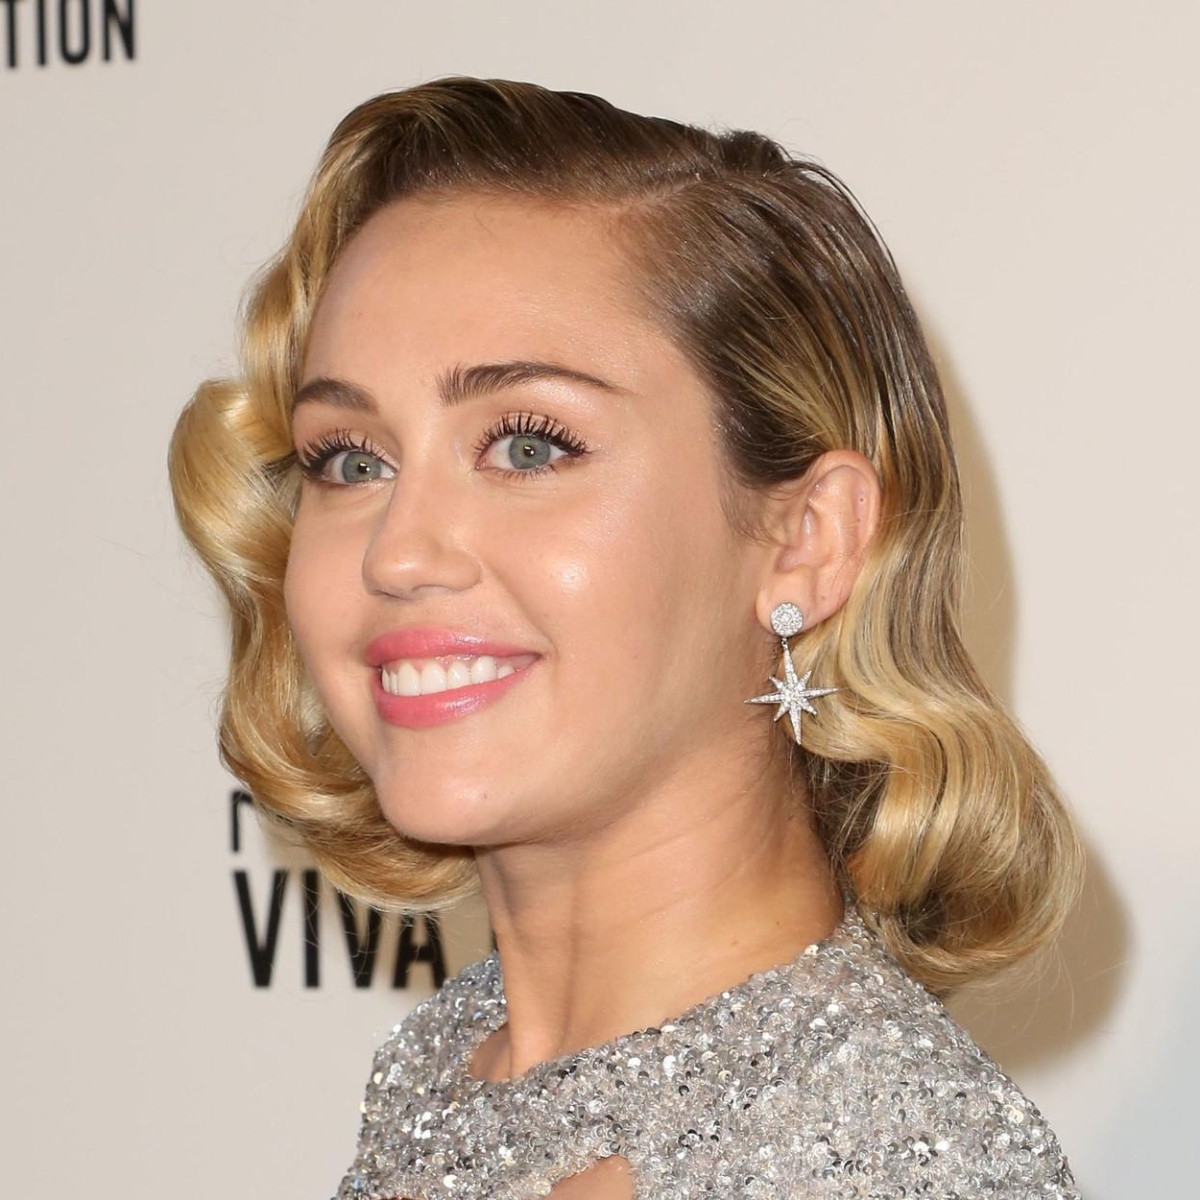 Miley Cyrus cumple 29 años aceptando sus luces y sombras | El Informador